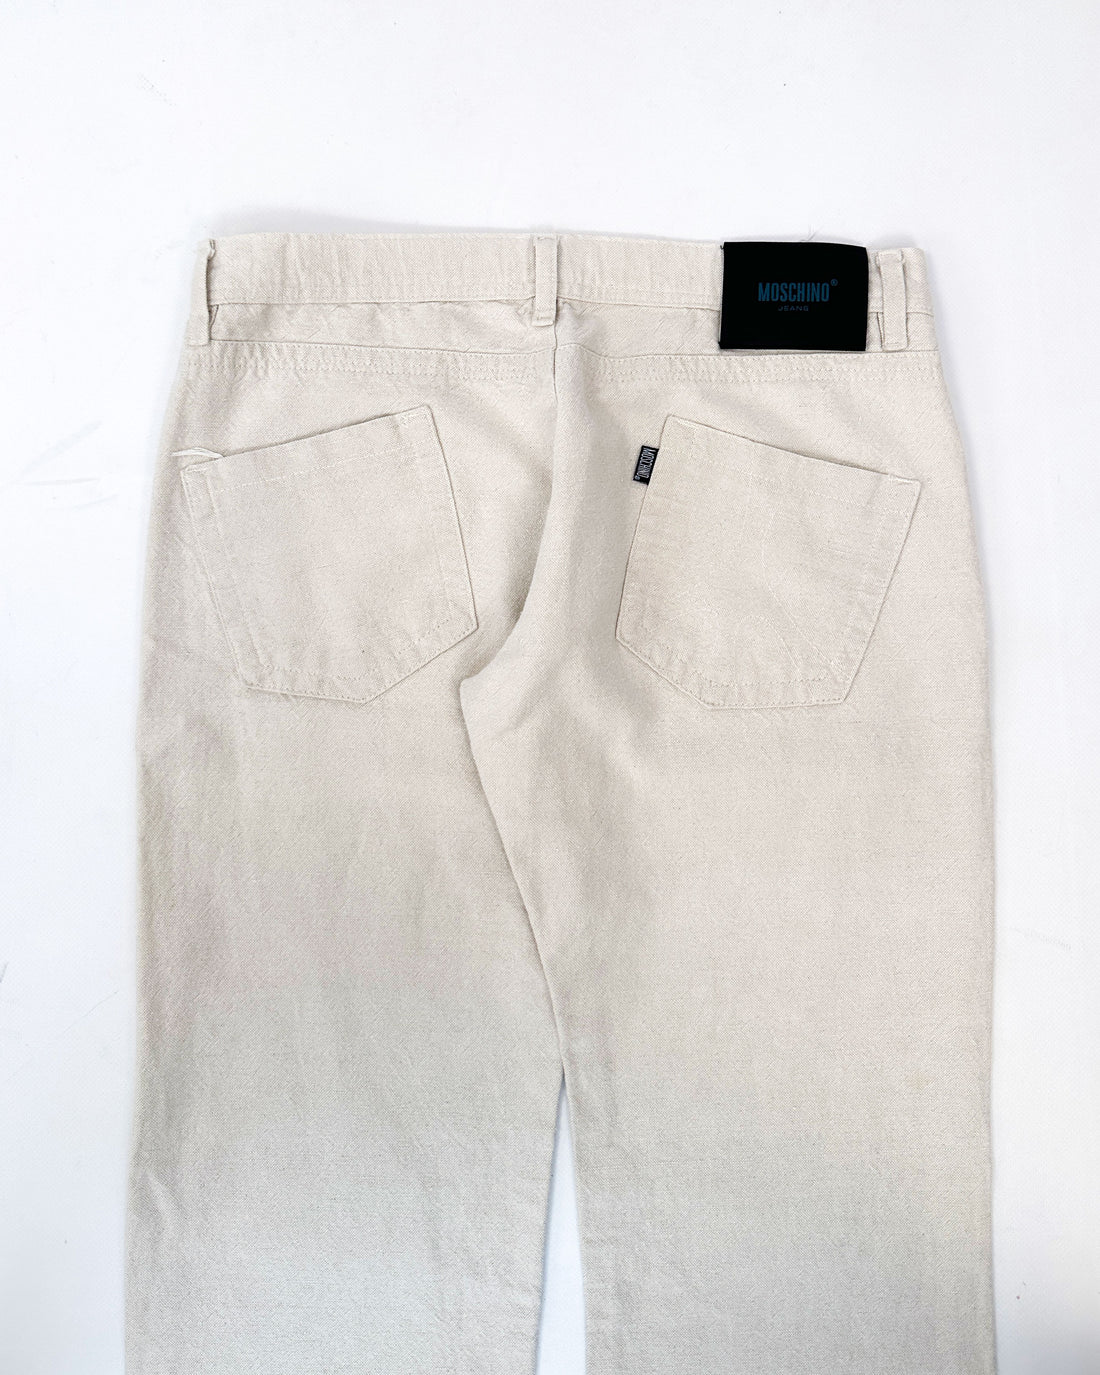 Moschino Hemp Style Cream White Pants 1990's